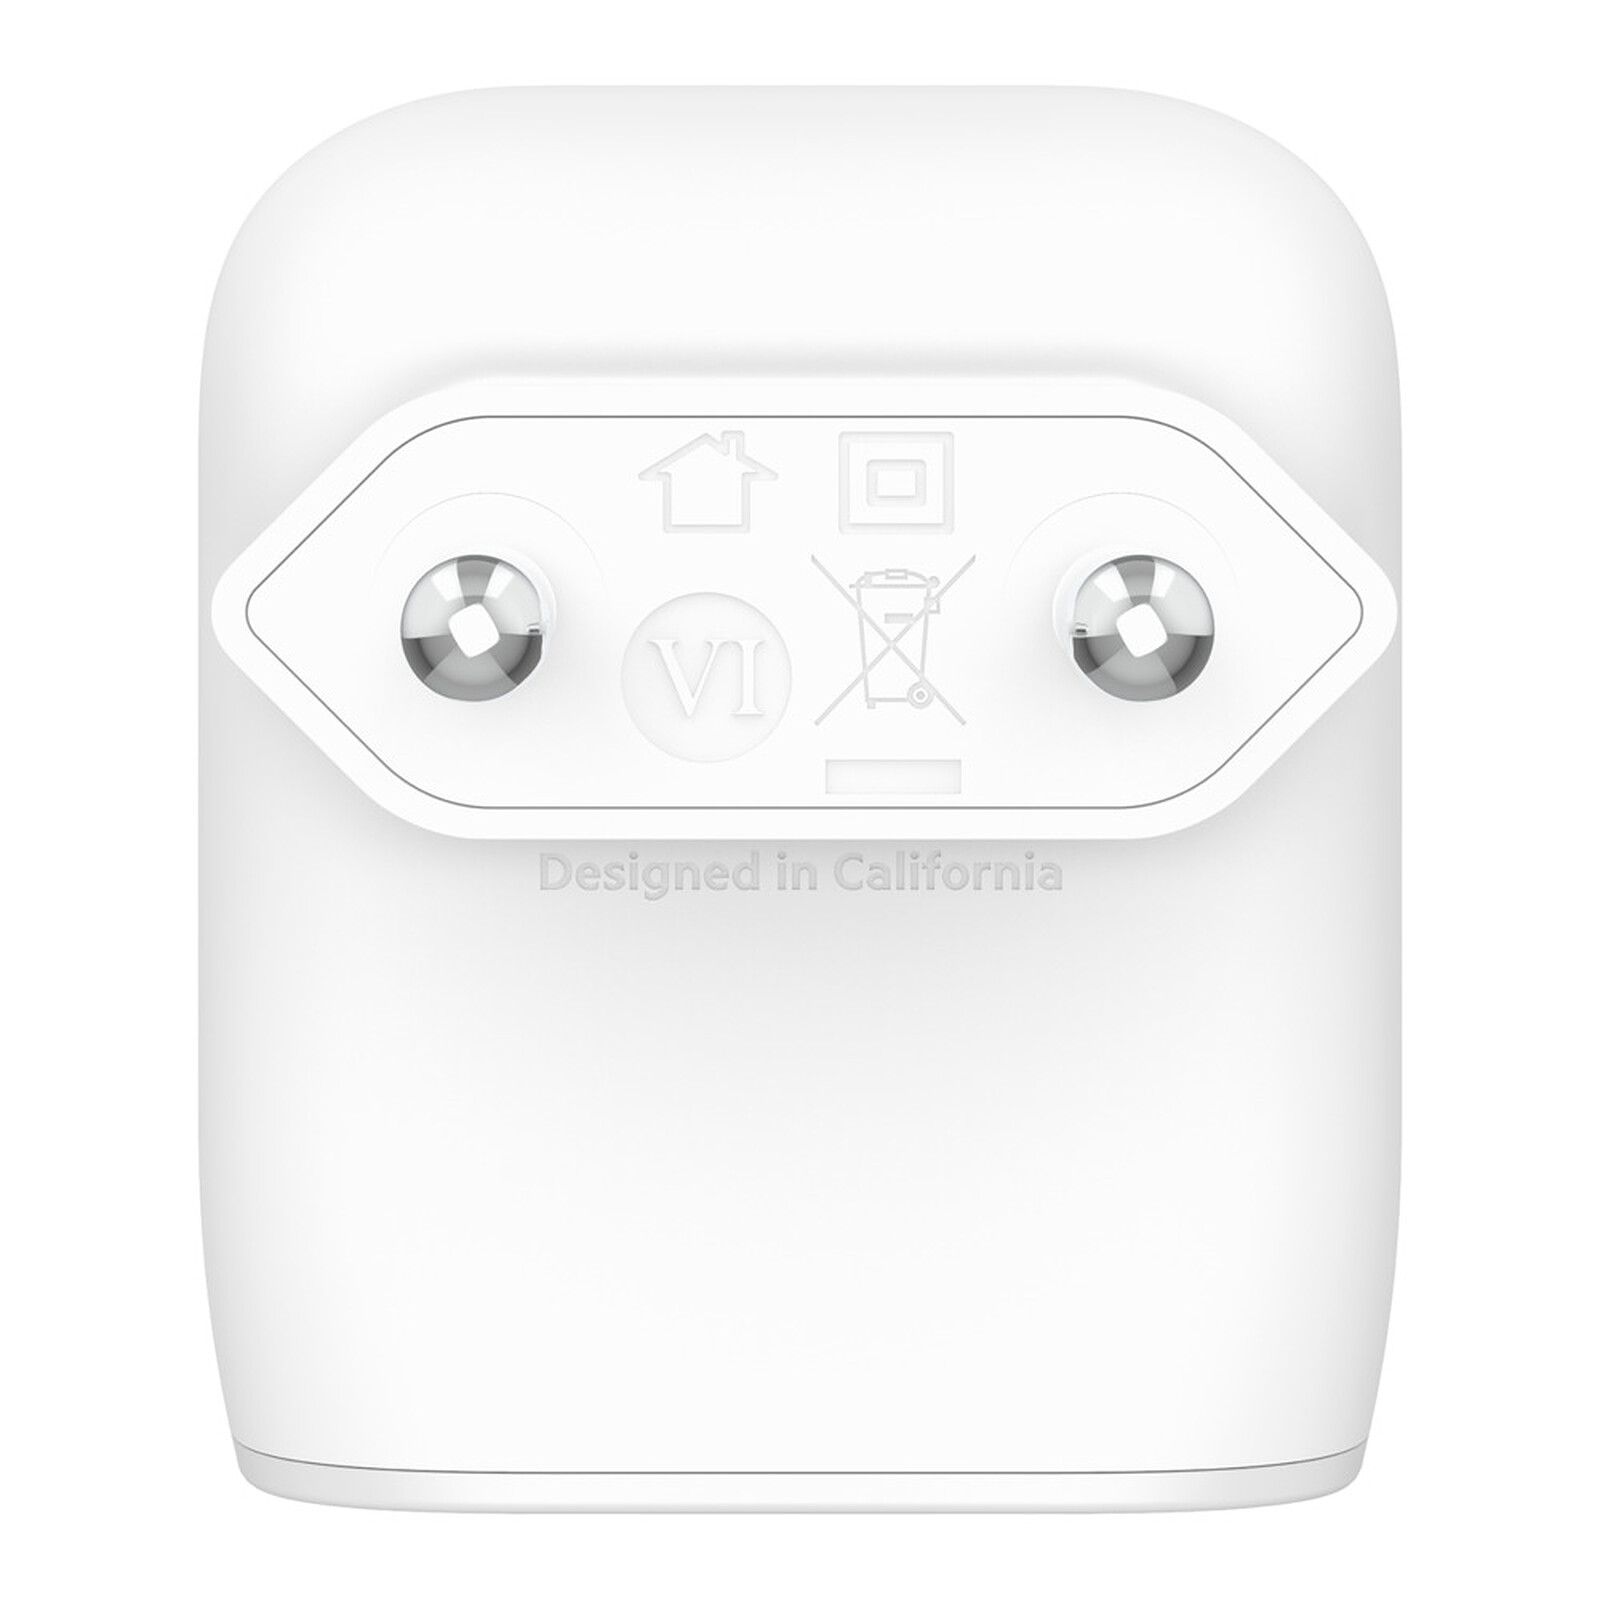 Le chargeur secteur idéal spécialement conçu par Apple pour votre iPhone